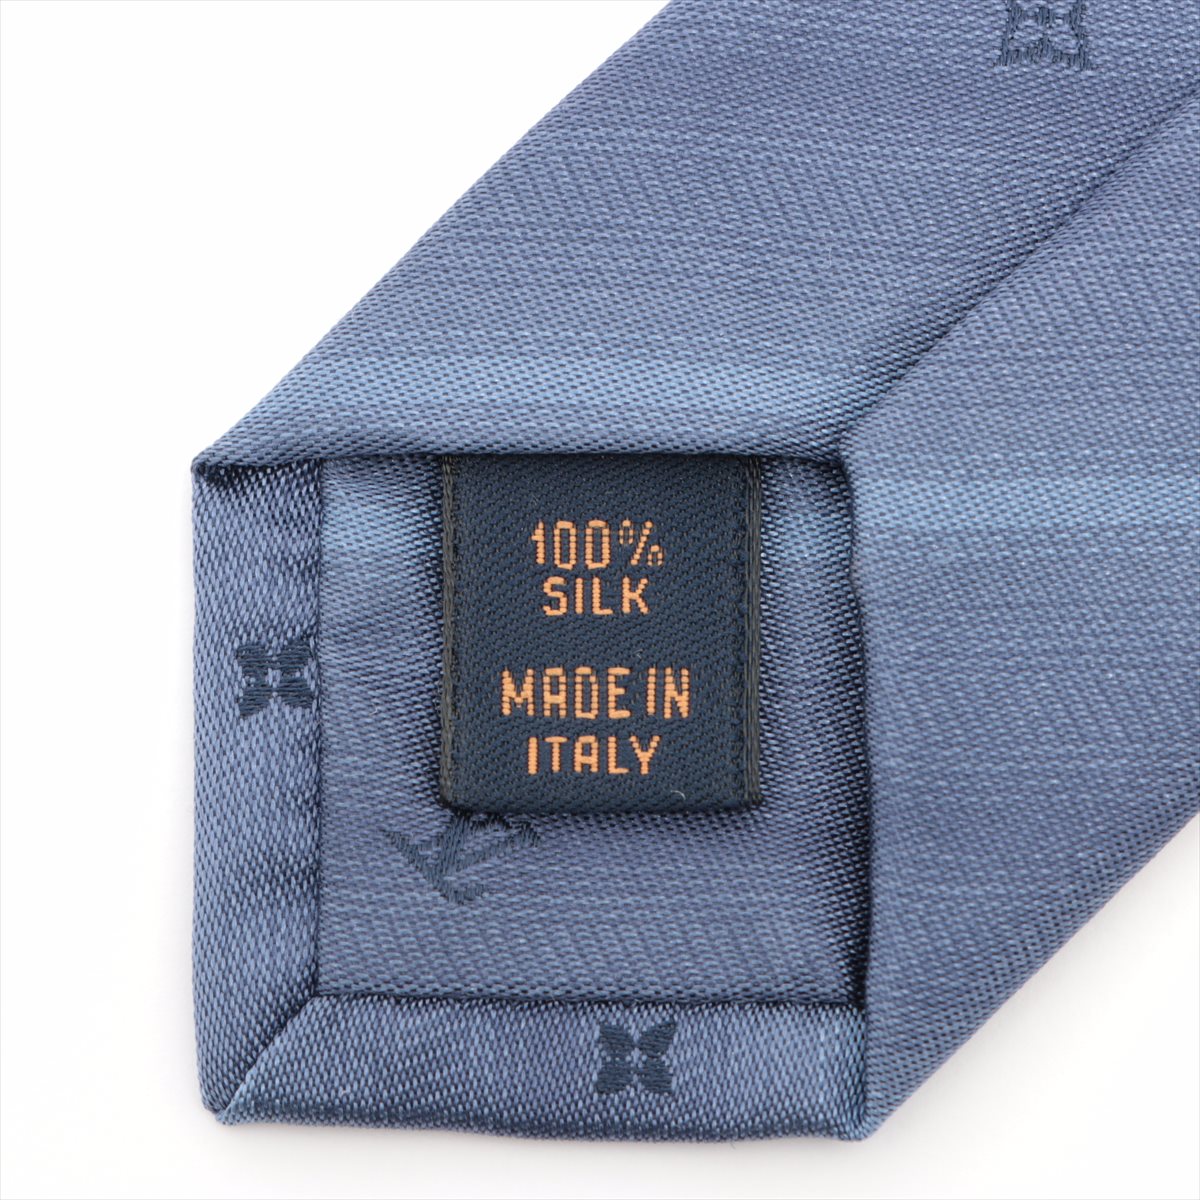 Louis Vuitton M71686 Cravat monogram whisper MR0197 Necktie Silk Blue